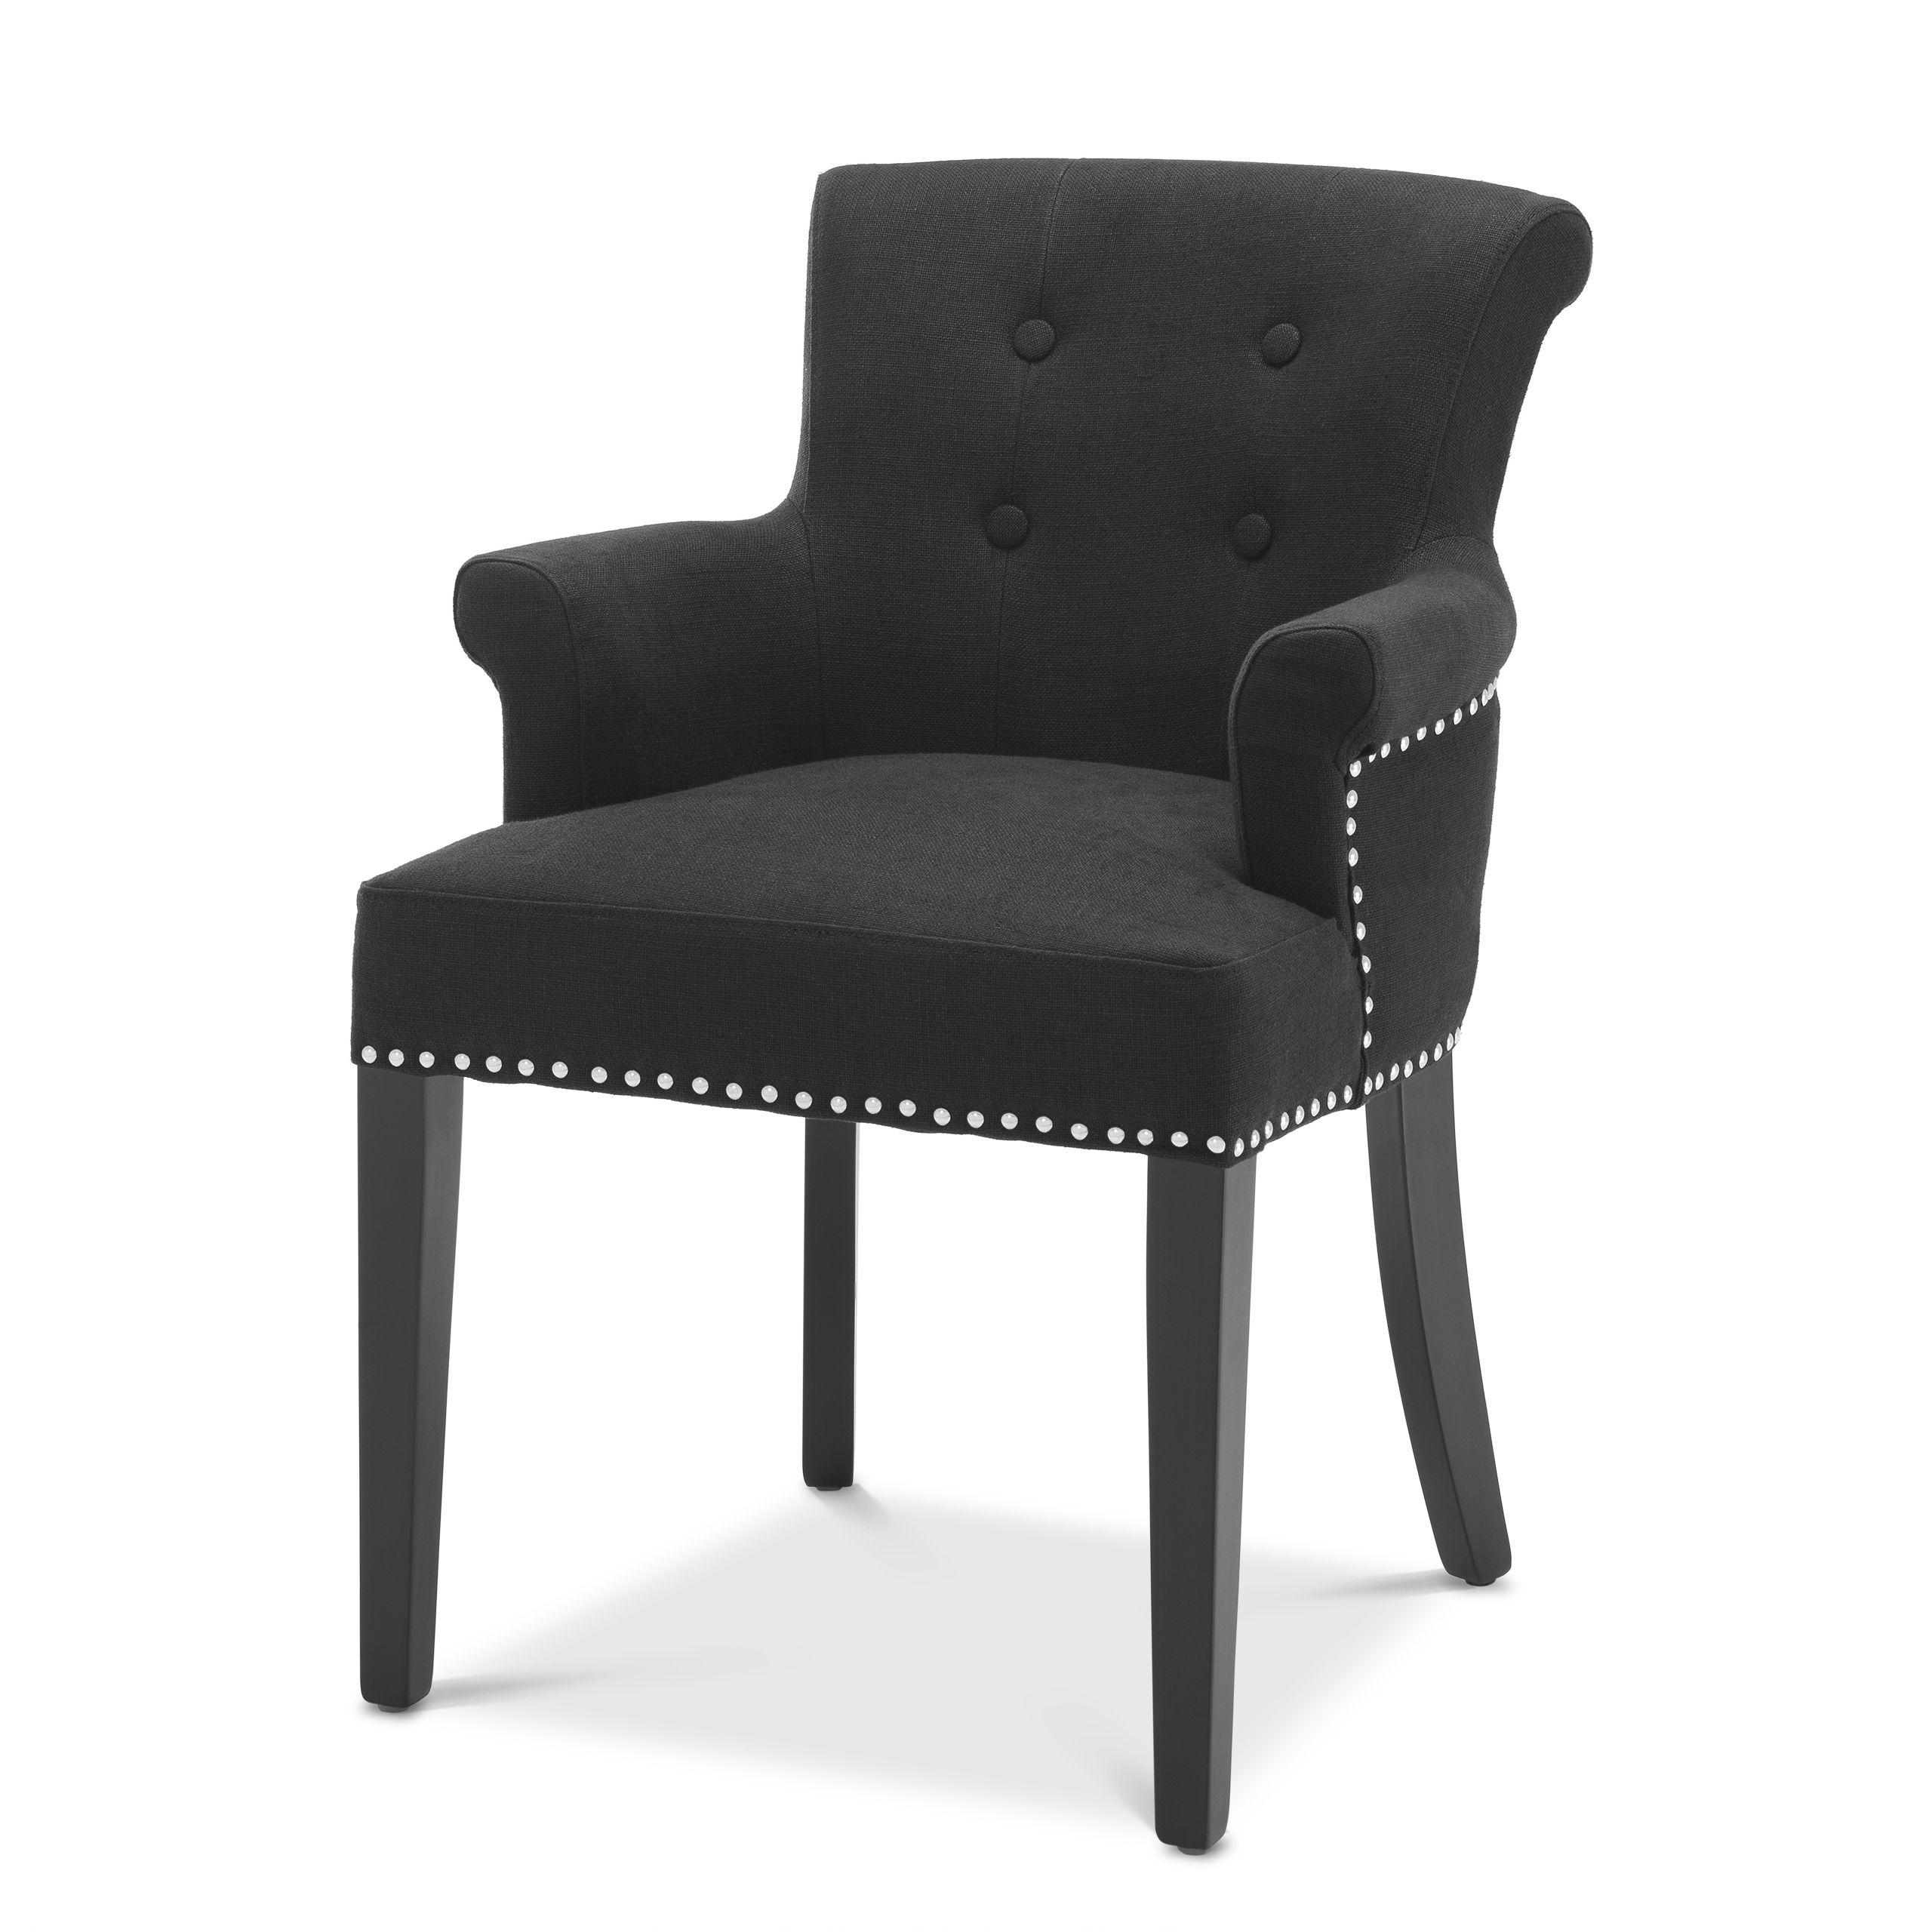 Купить Стул с подлокотником Dining Chair Key Largo with arm в интернет-магазине roooms.ru